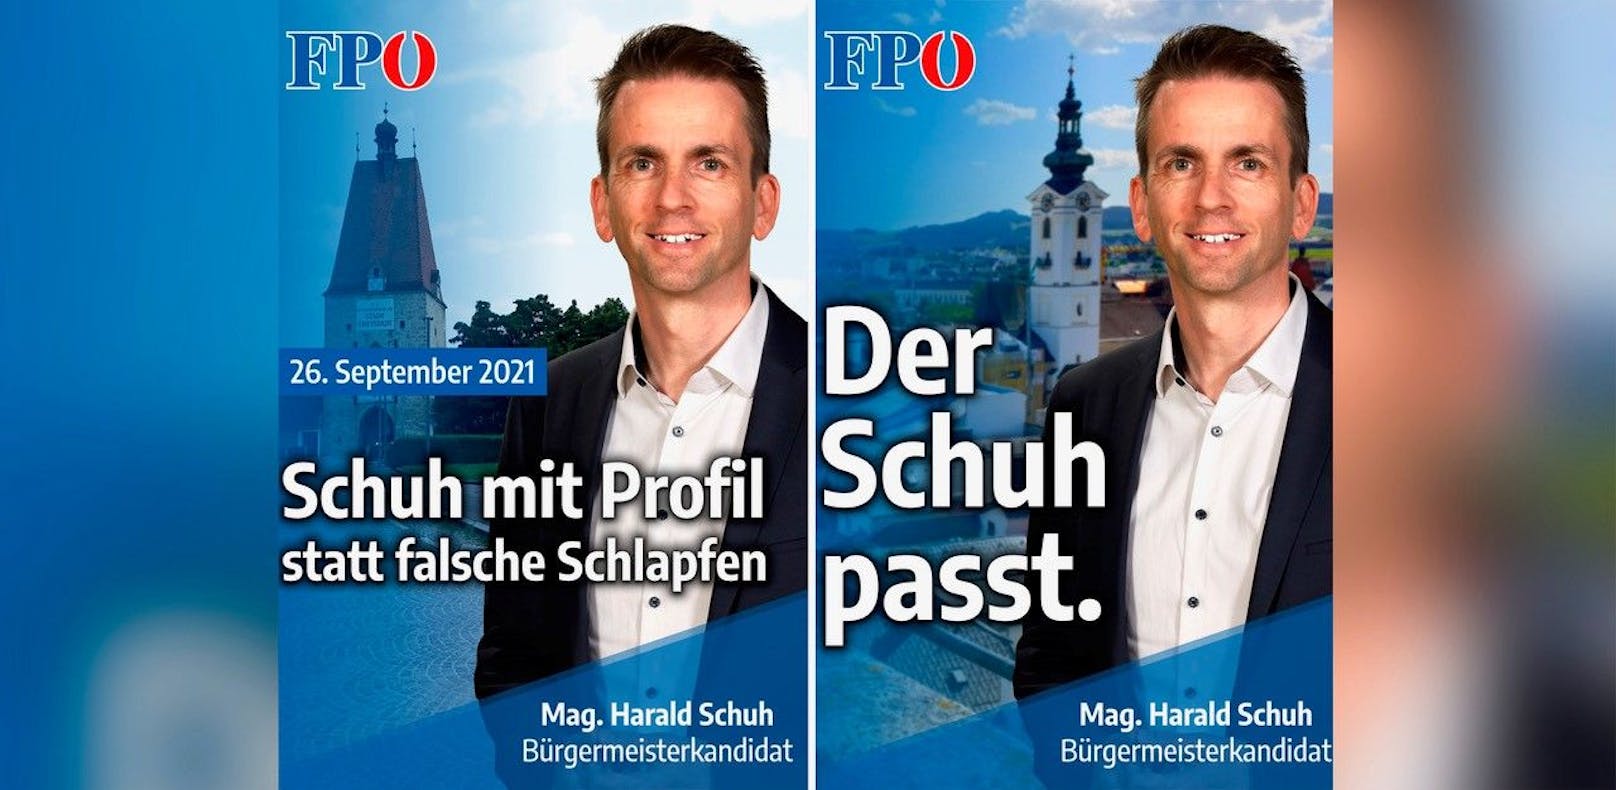 Zwei Vorschläge der FPÖ rund um Bürgermeisterkandidat Harald Schuh.